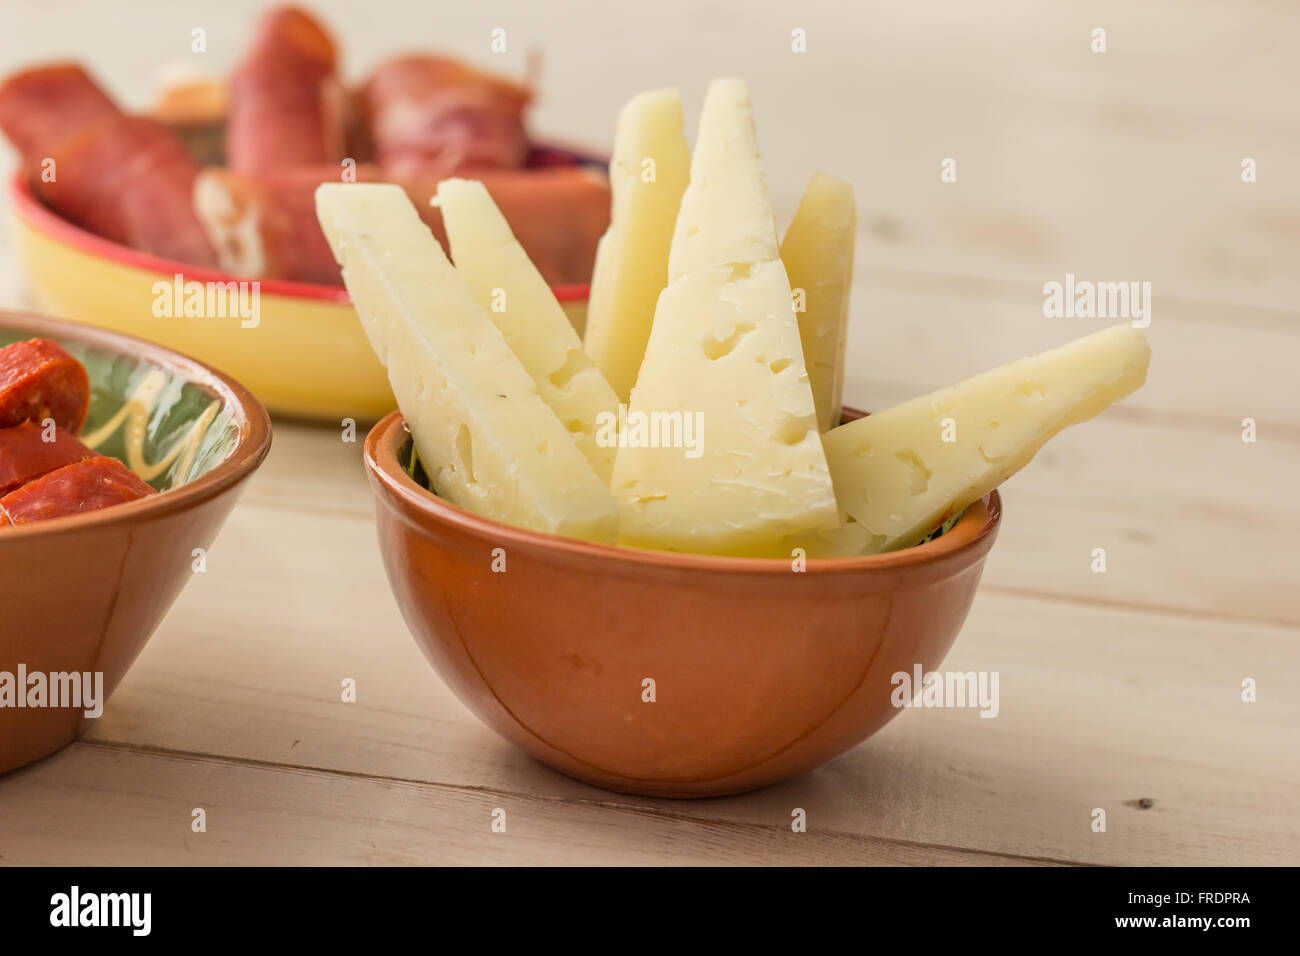 Las tapas, el queso manchego y el jamón en una tabla blanca Foto de stock